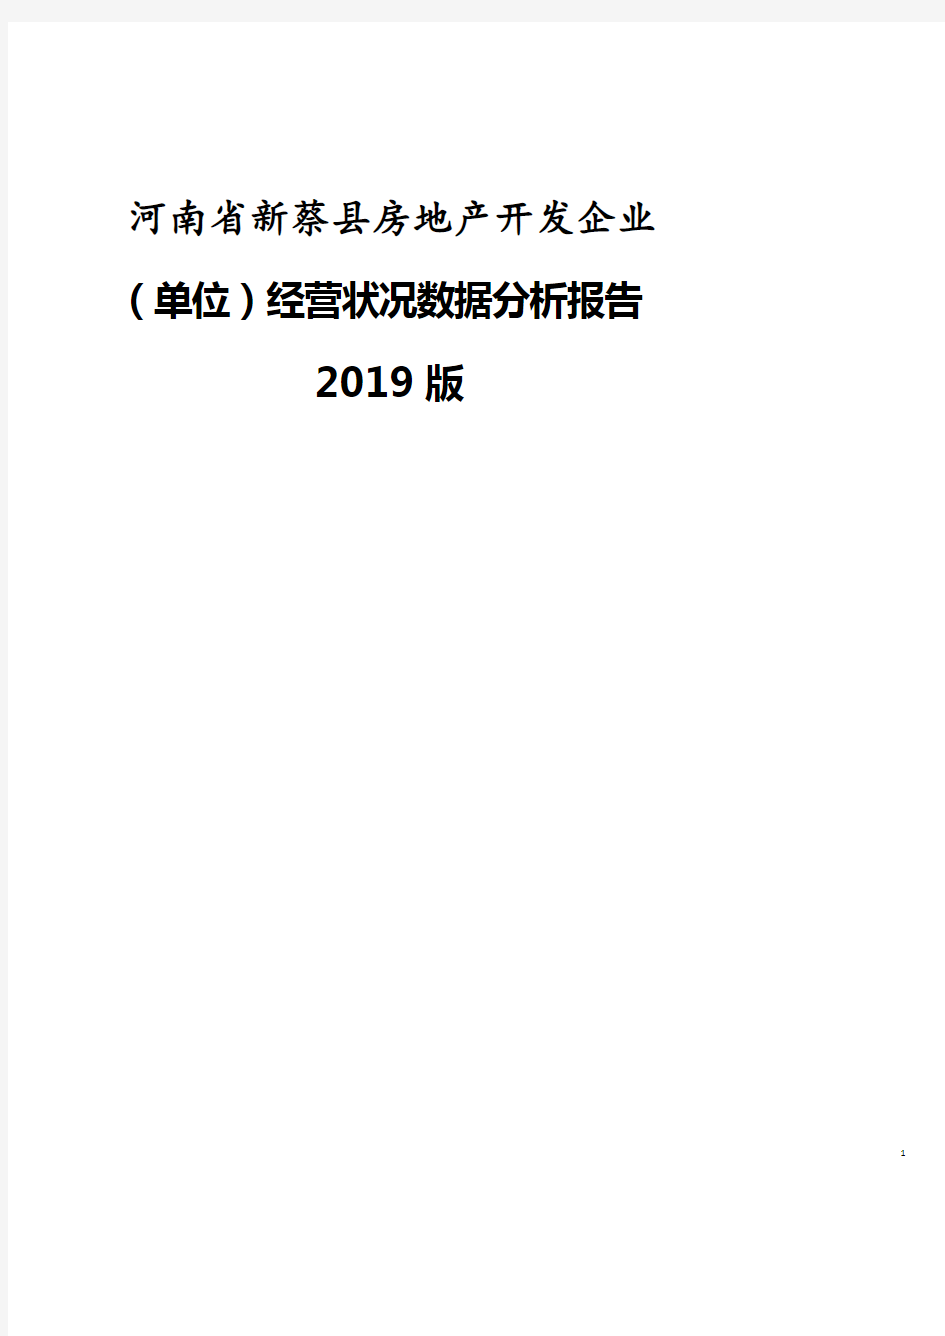 河南省新蔡县房地产开发企业(单位)经营状况数据分析报告2019版.pdf